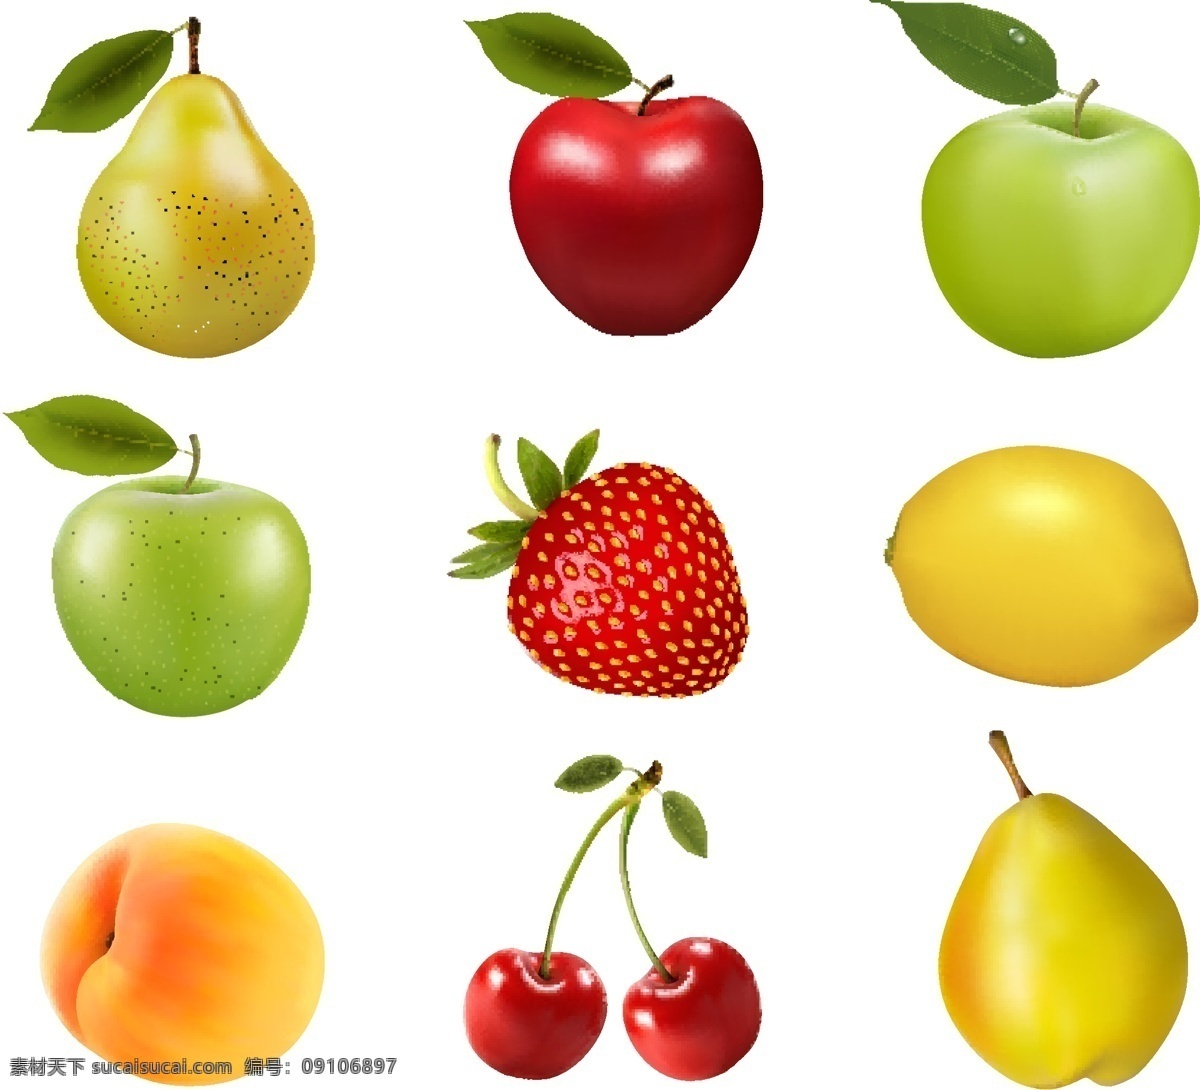 整齐 排列 各种 水果 矢量 新鲜的水果 果子 瓜果 蔬菜 整齐排列 苹果 柠檬 草莓 樱桃 黄桃 文化艺术 绘画书法